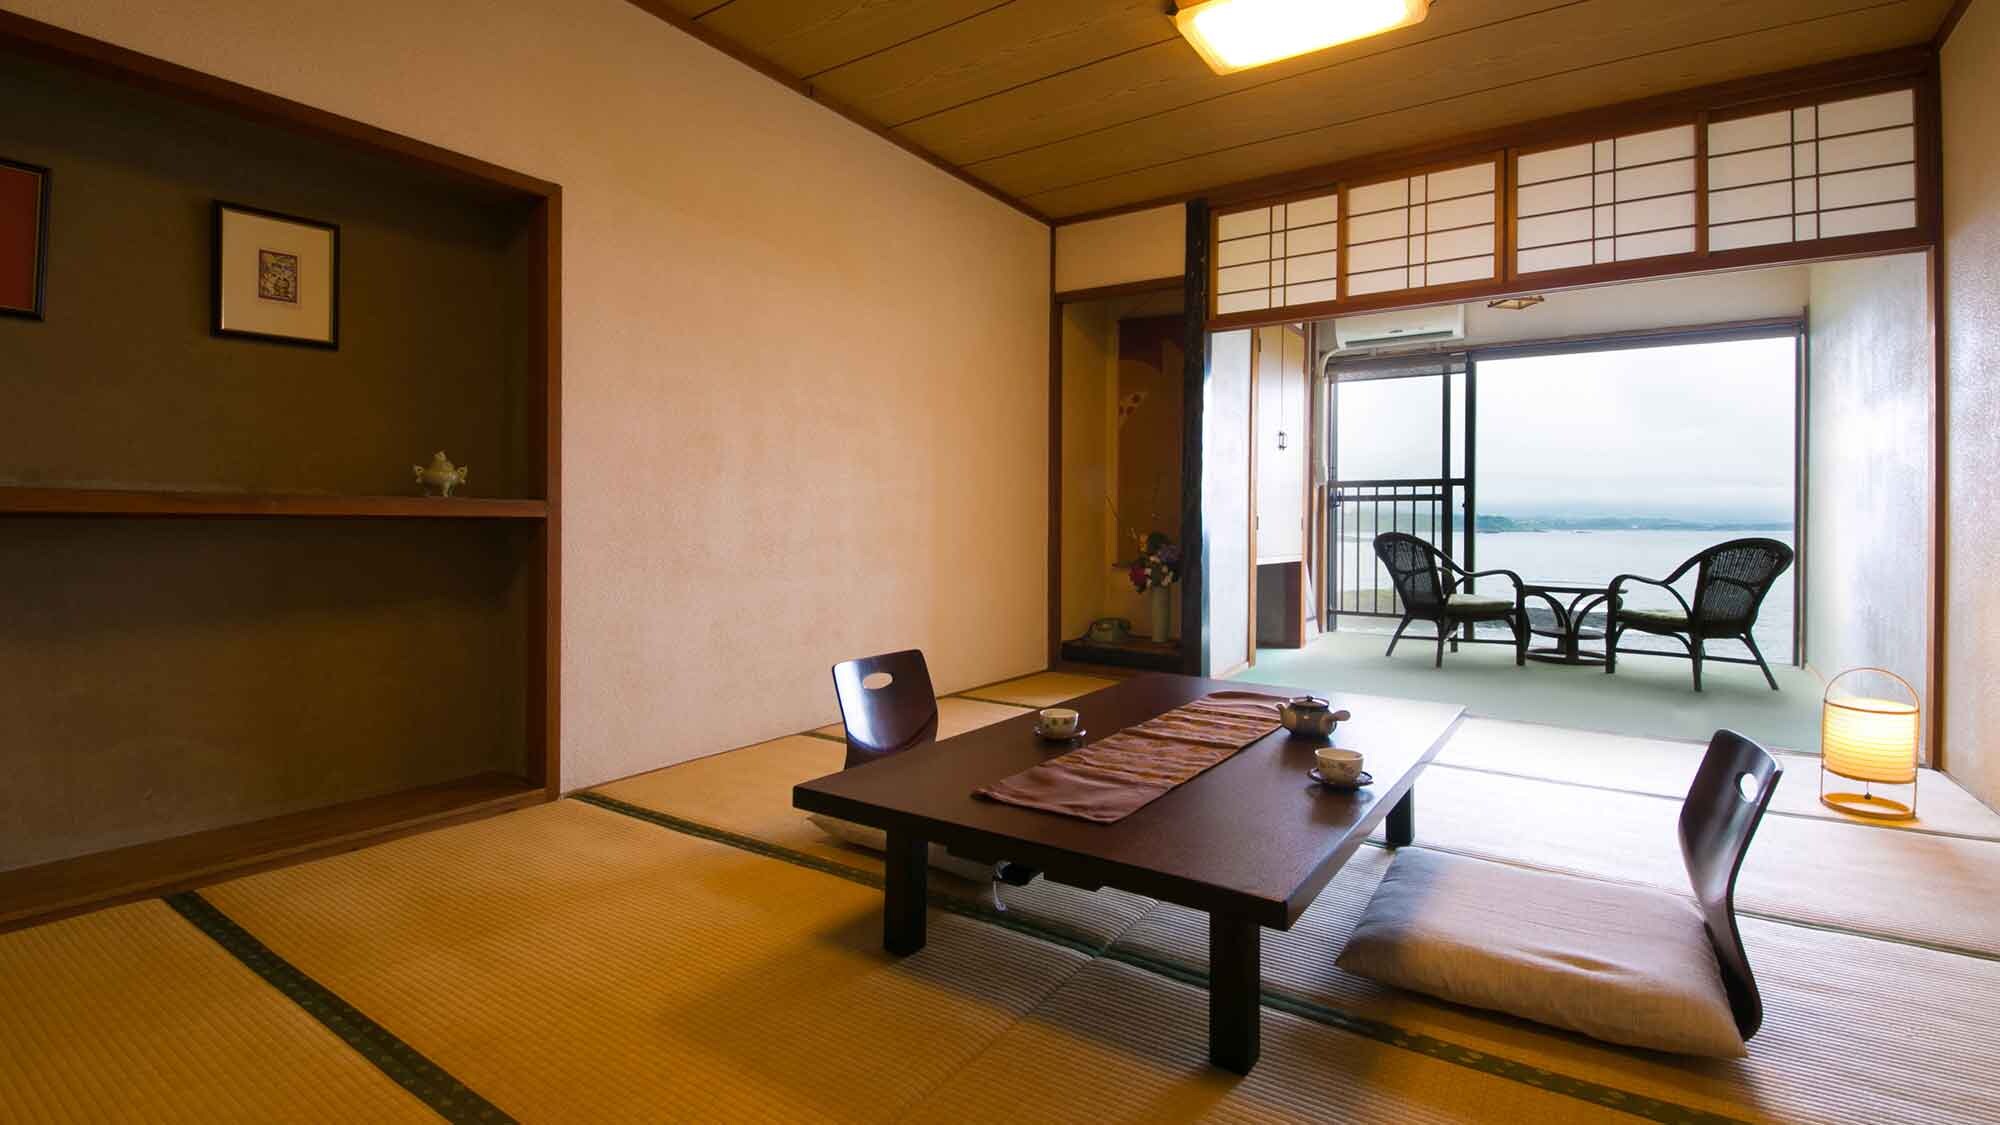 ・[ตัวอย่างเสื่อทาทามิ 12 ผืนและเสื่อทาทามิ 14 ผืนในห้องสไตล์ญี่ปุ่น] พักผ่อนในห้องที่กว้างขวางระหว่างการนอนหลับของคุณ